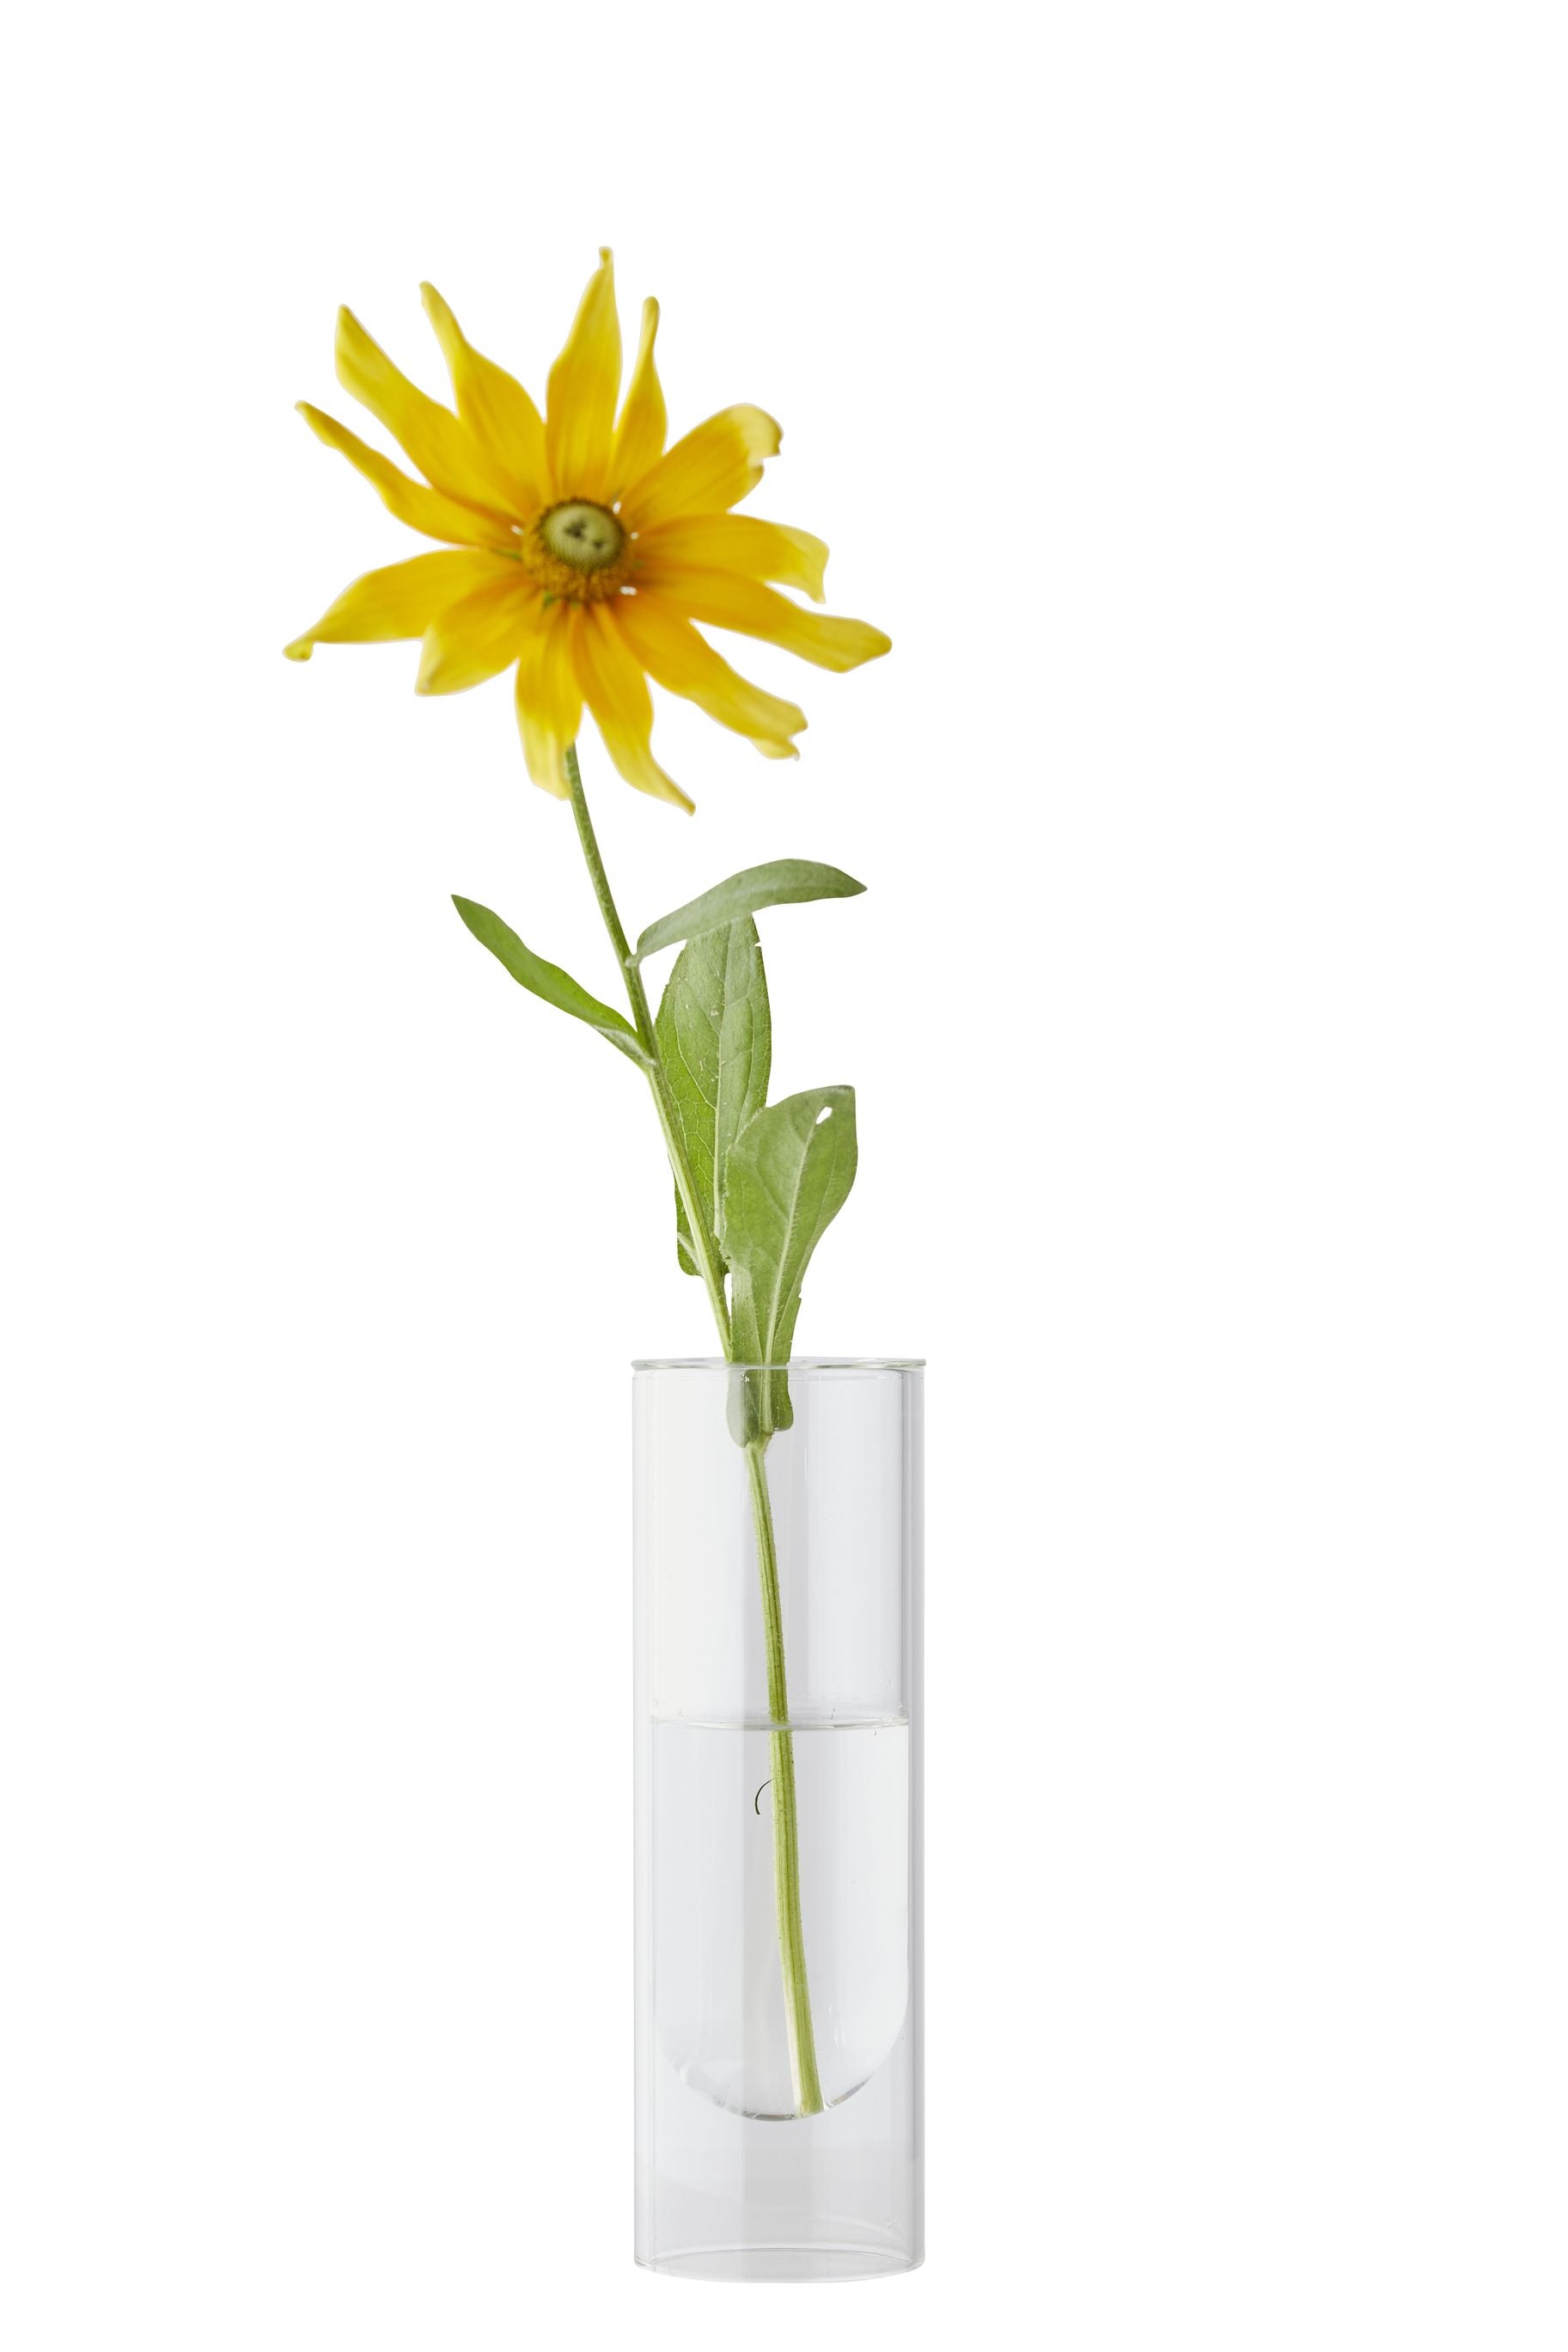 Estudio sobre el jarrón de tubos de flores de 20 cm, transparente